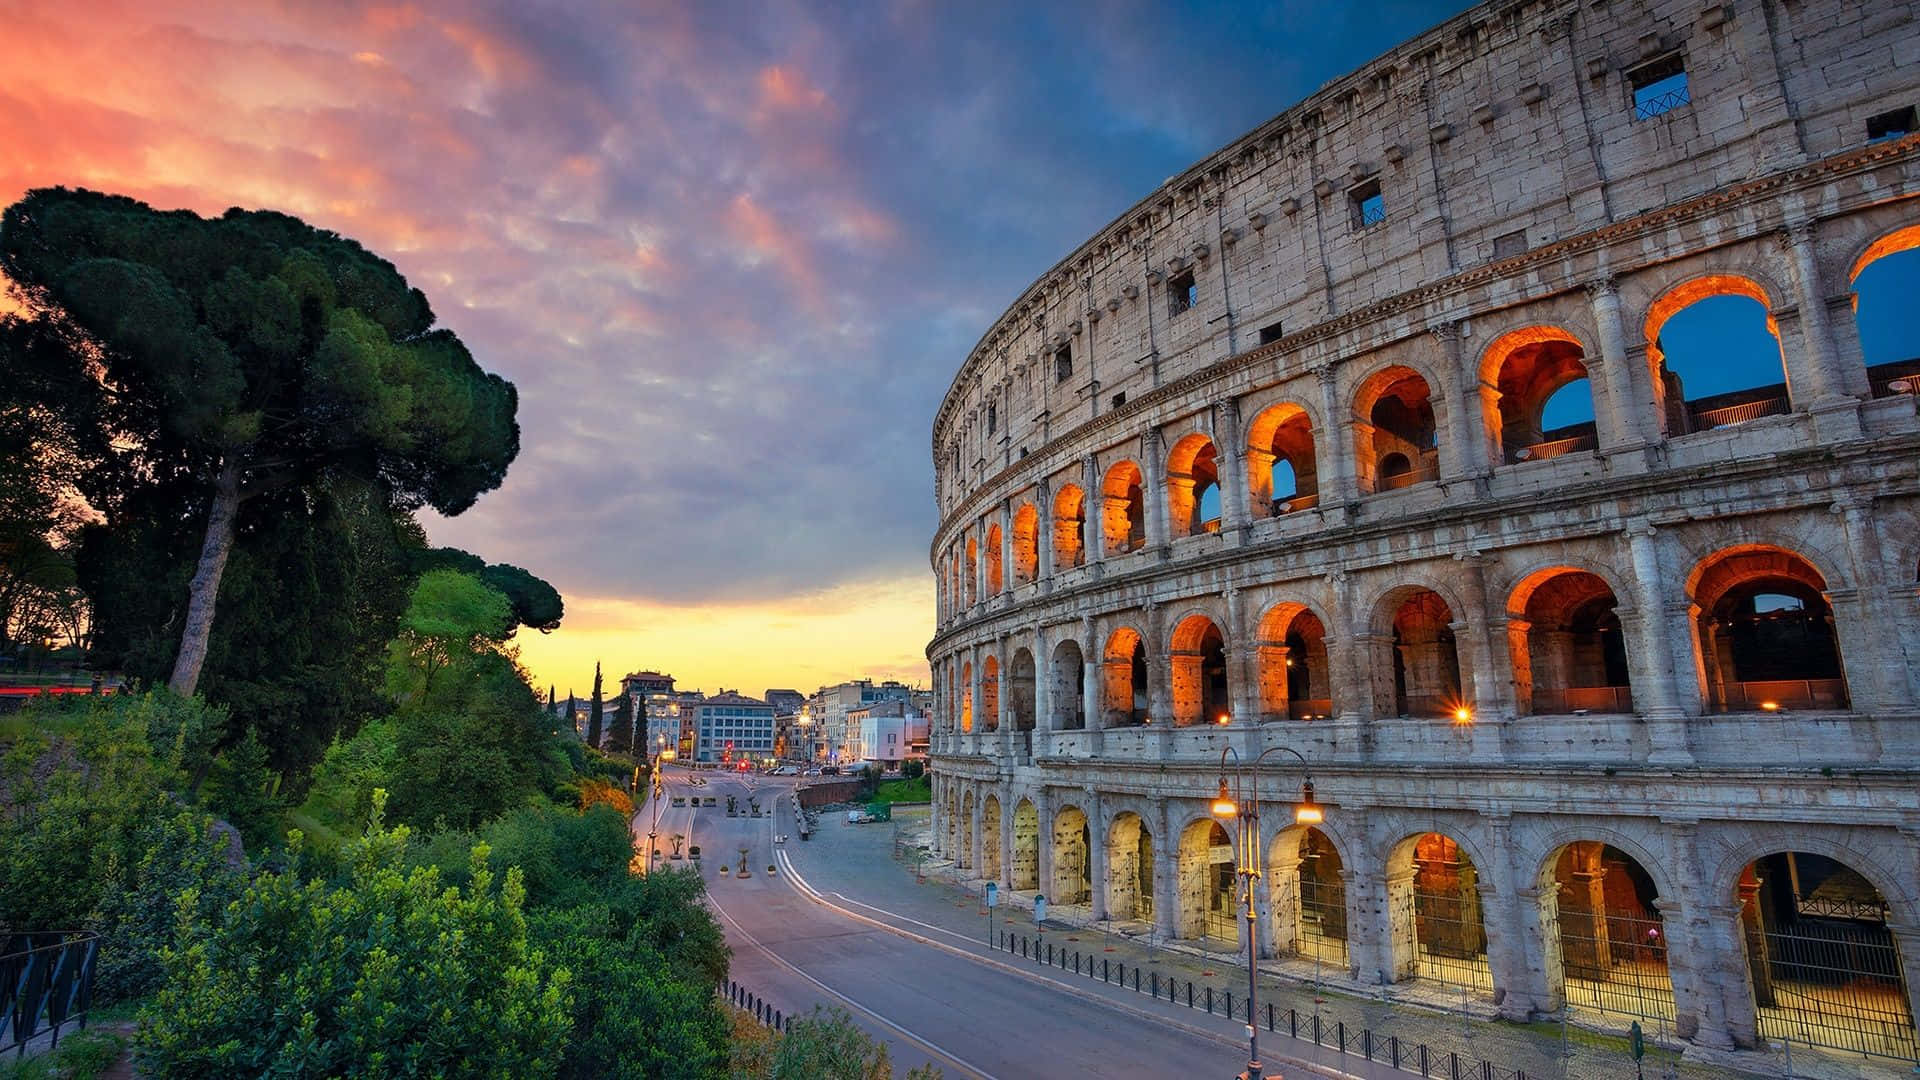 Acolosseum Em Roma Ao Entardecer